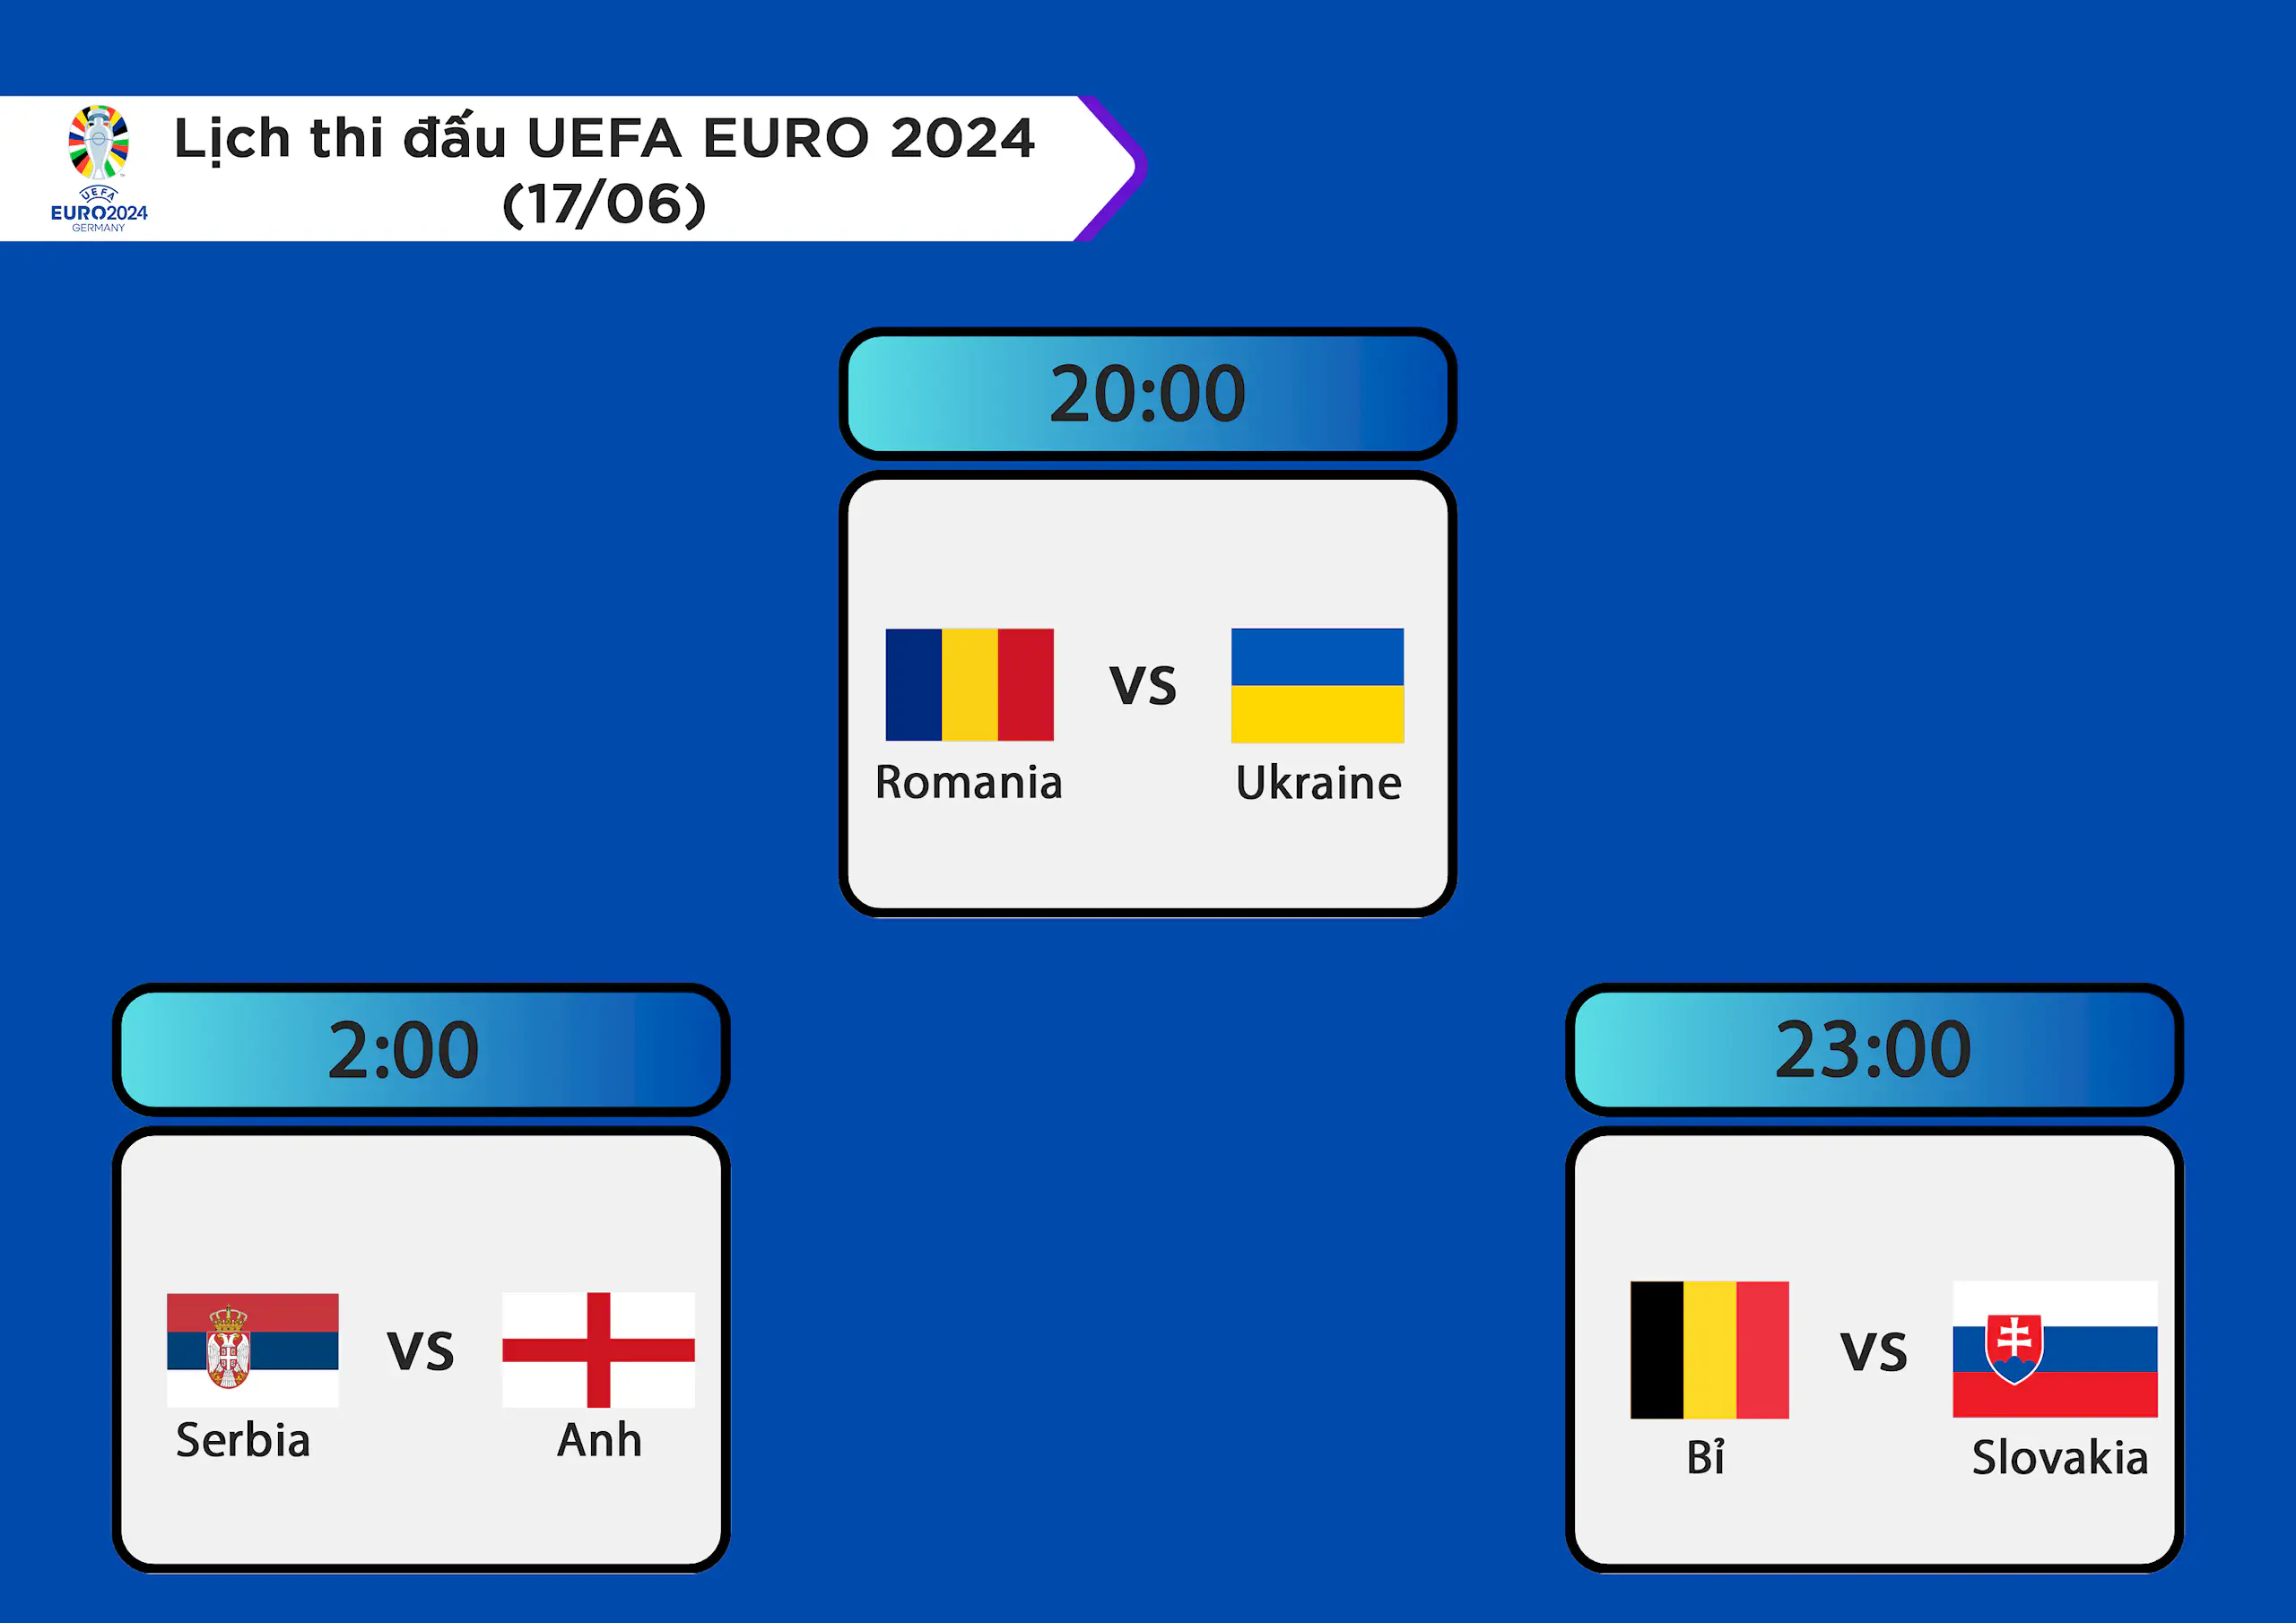 Lịch thi đấu UEFA EURO 2024 ngày 17/06